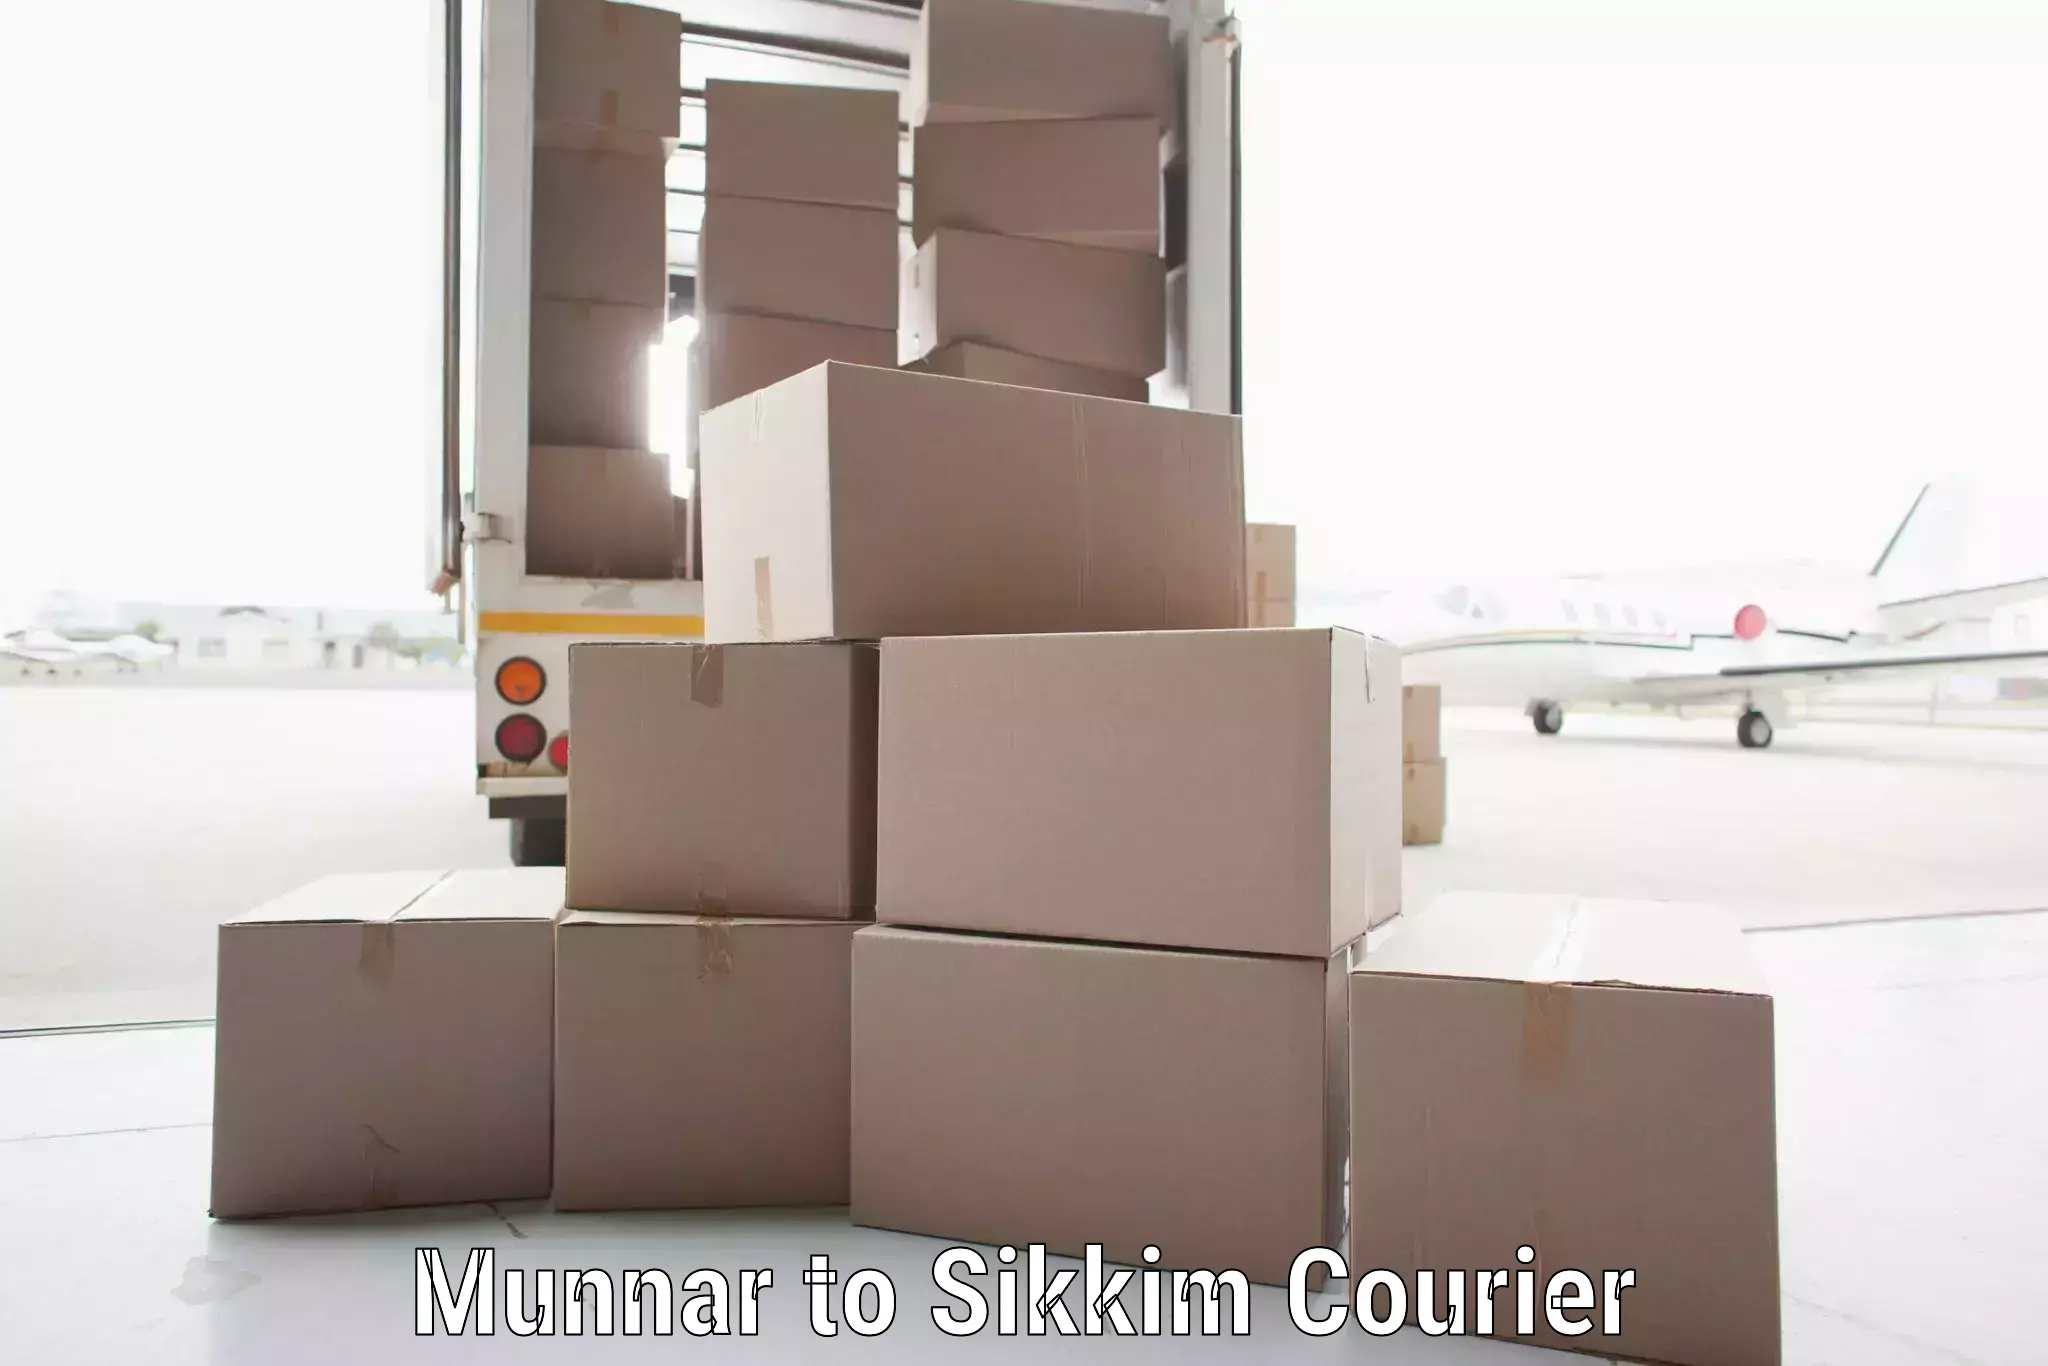 High-performance logistics Munnar to West Sikkim